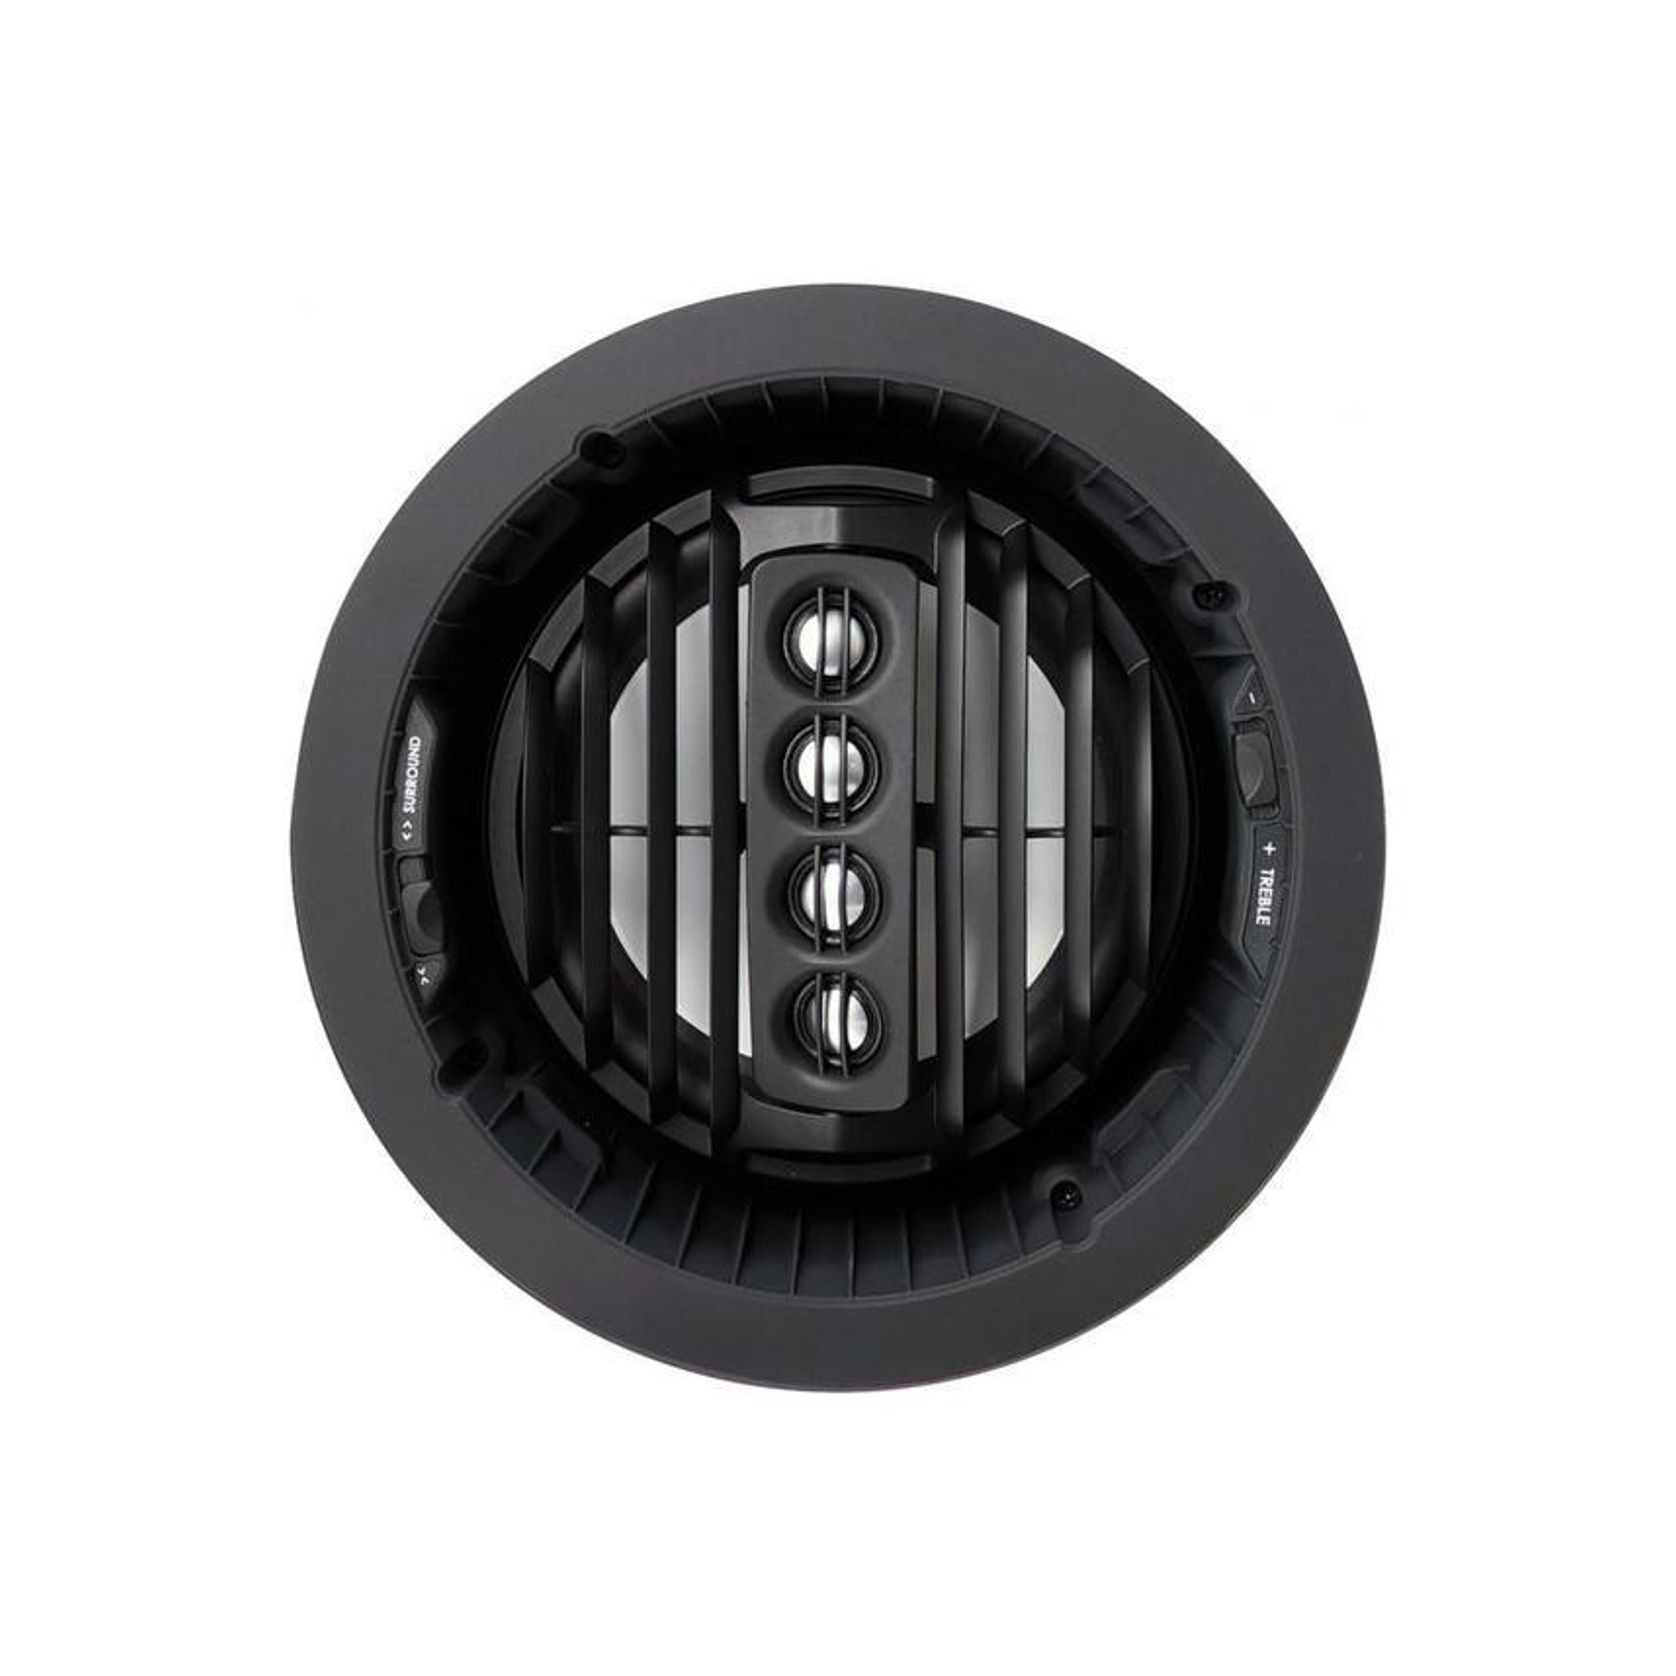 Speakercraft Profile Aim Series 273SR In-Ceiling Speaker  gallery detail image